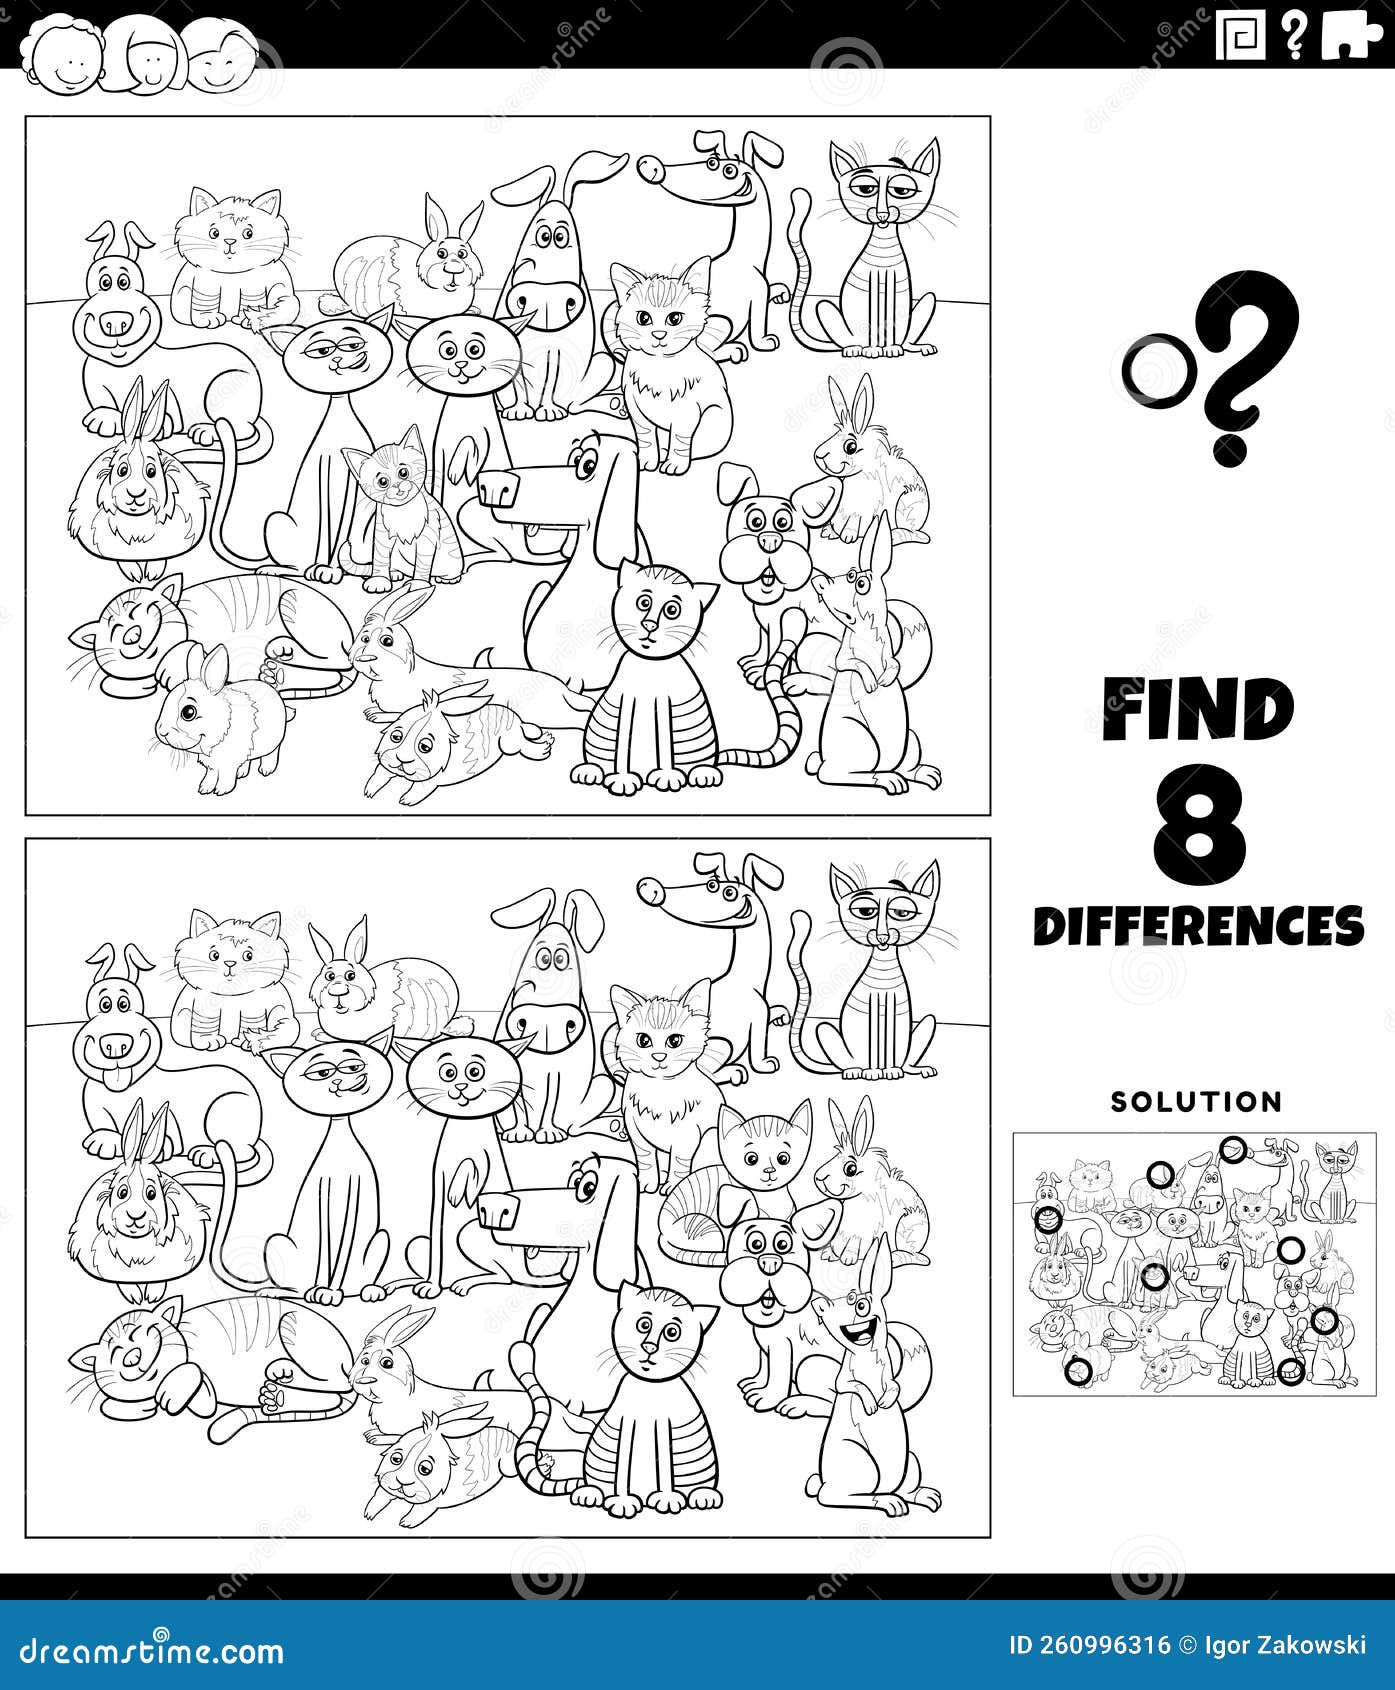 Desenho de jogo de diferenças com cavalos de desenho animado para colorir